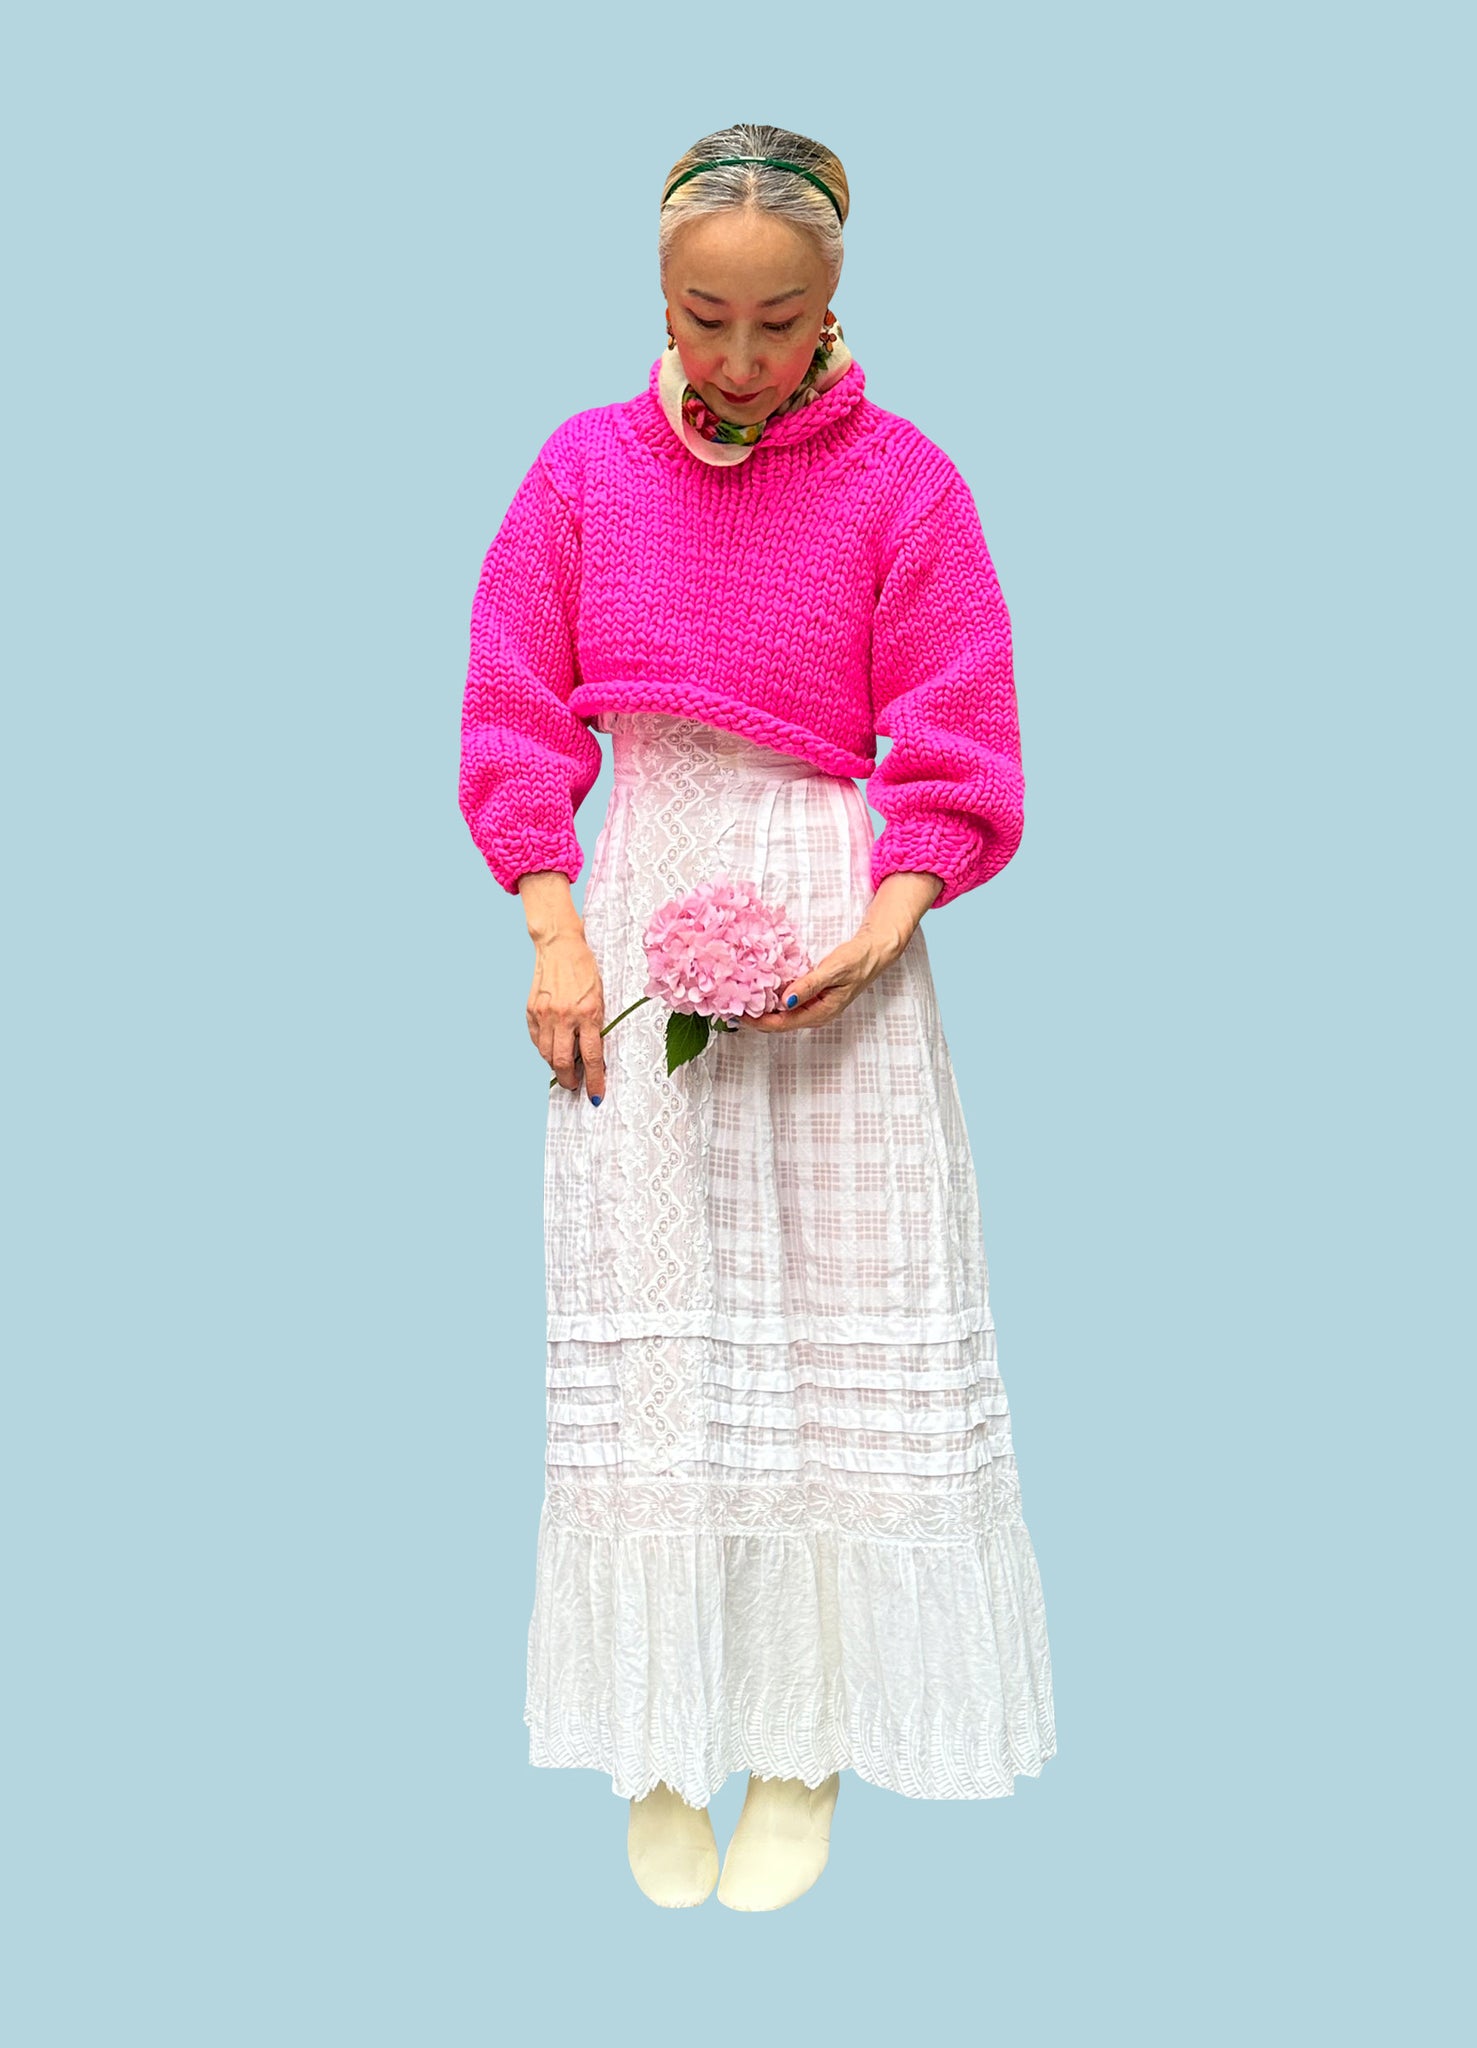 DIY Kit - Tomboy Sweater - Merino No. 5